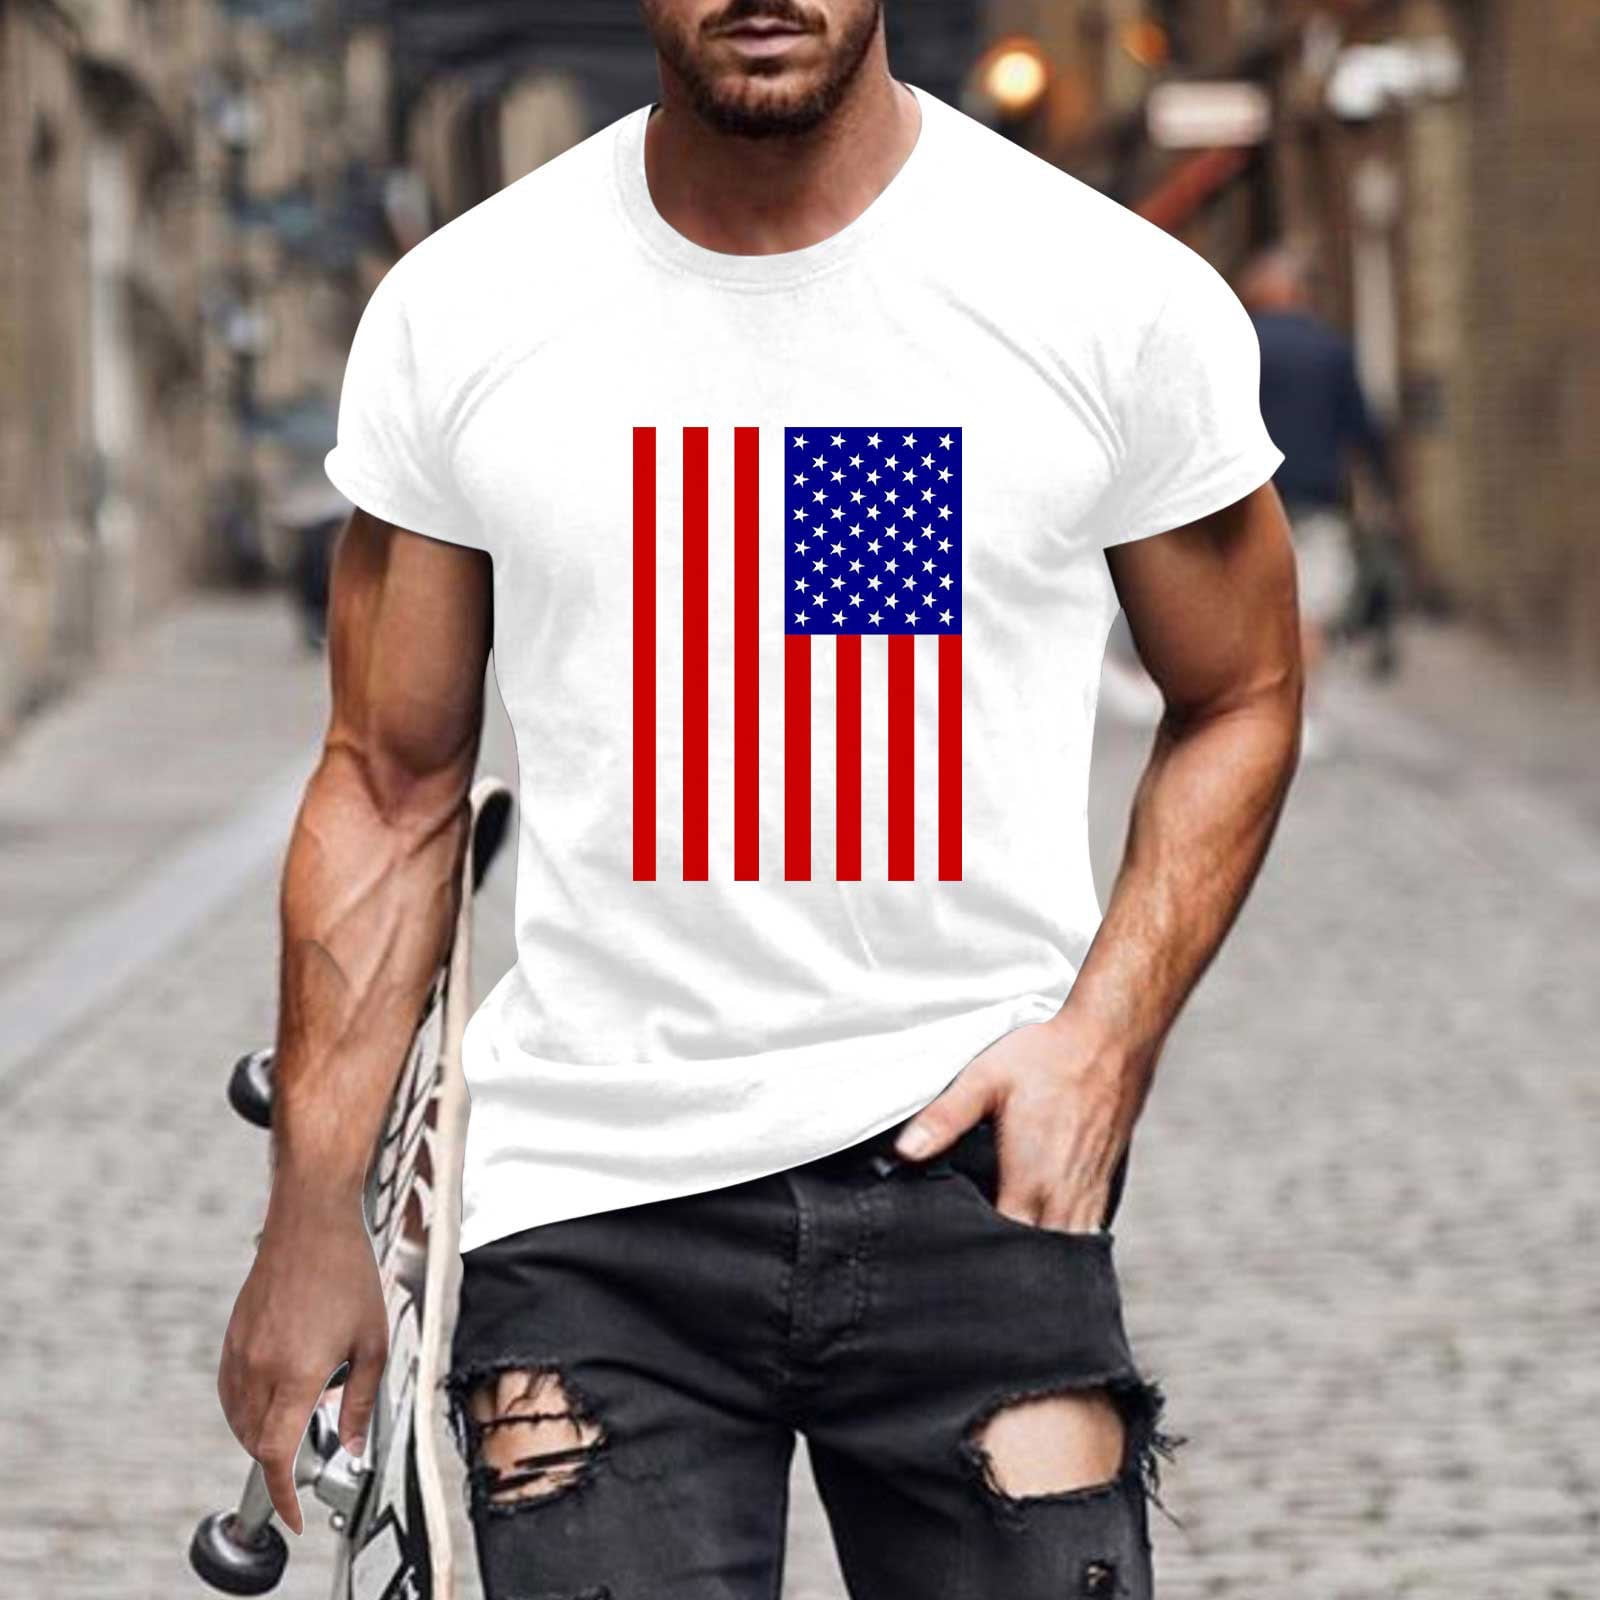 American Vintage Men's T-Shirt - White - L